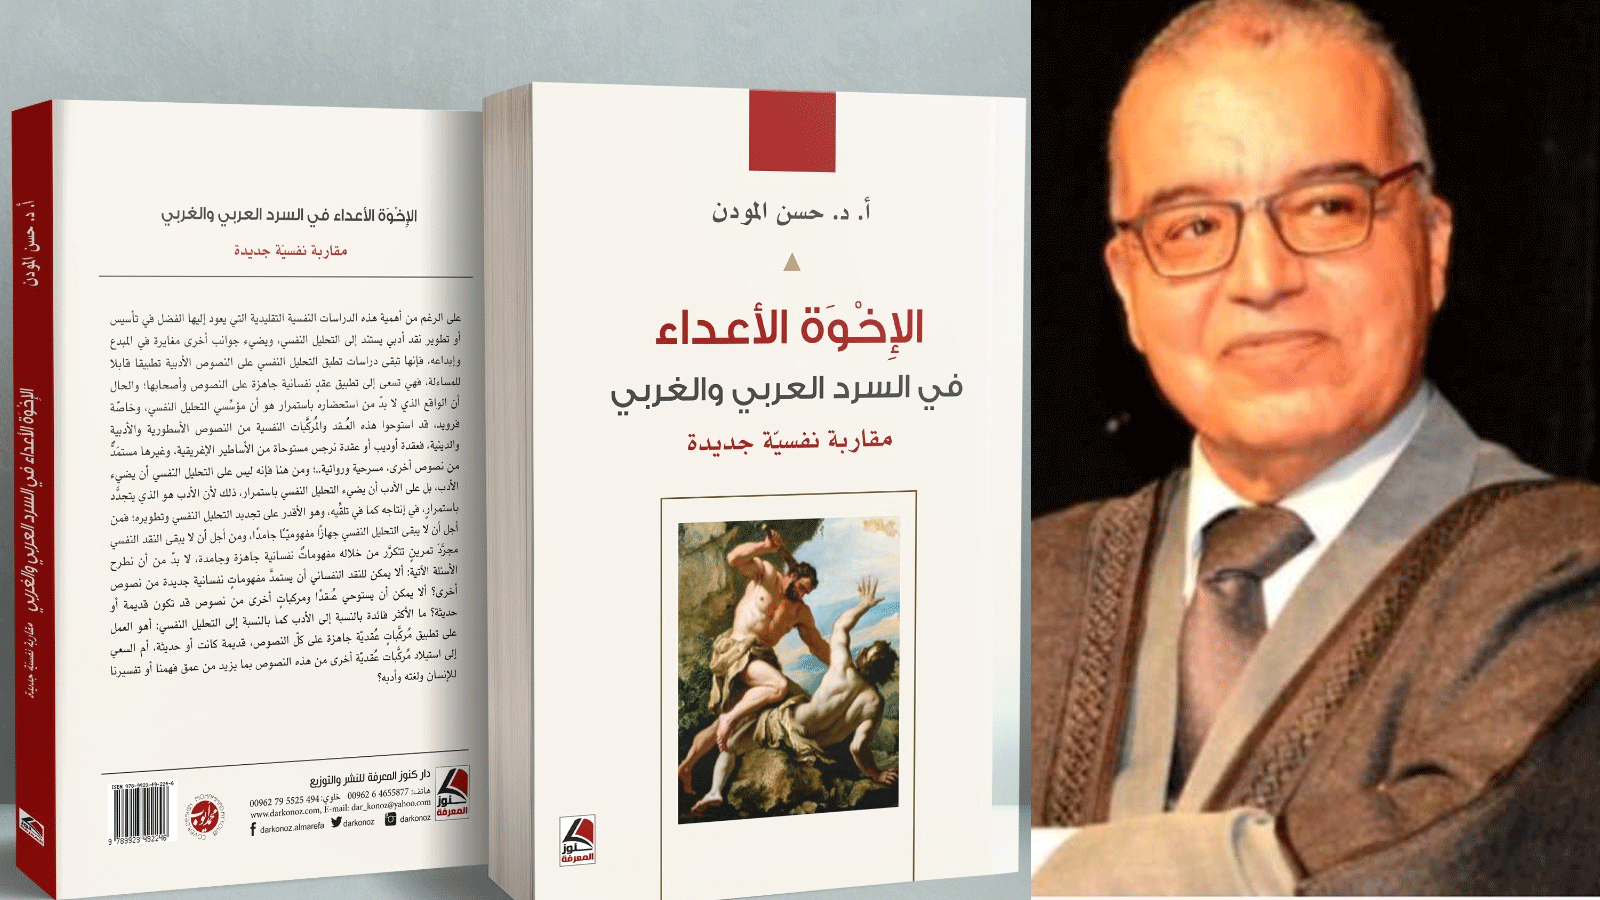 صورة مجمعة للباحث المغربيّ د.حسن المودن مع غلاف كتابه الإخوةُ الأعداءُ